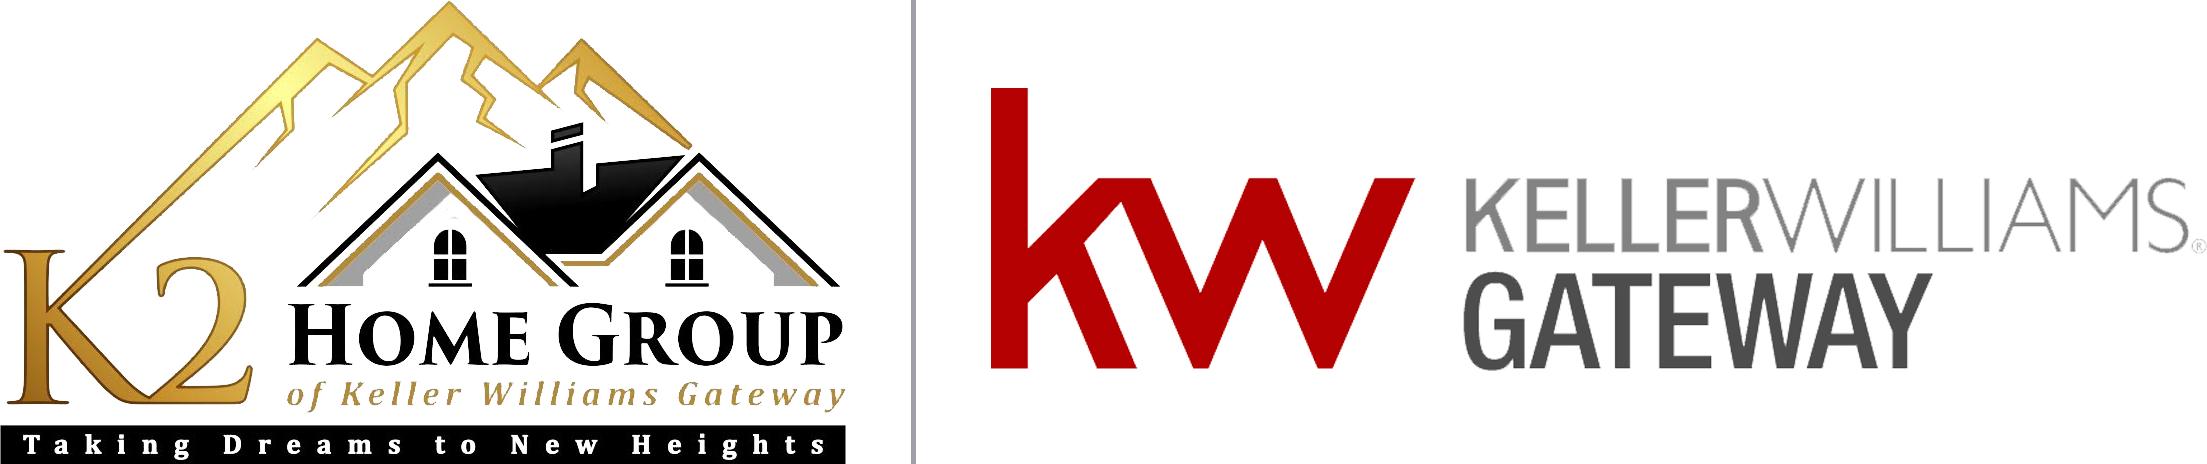 Pnc Bank City - Kw Logo Shot Glass (2207x464)